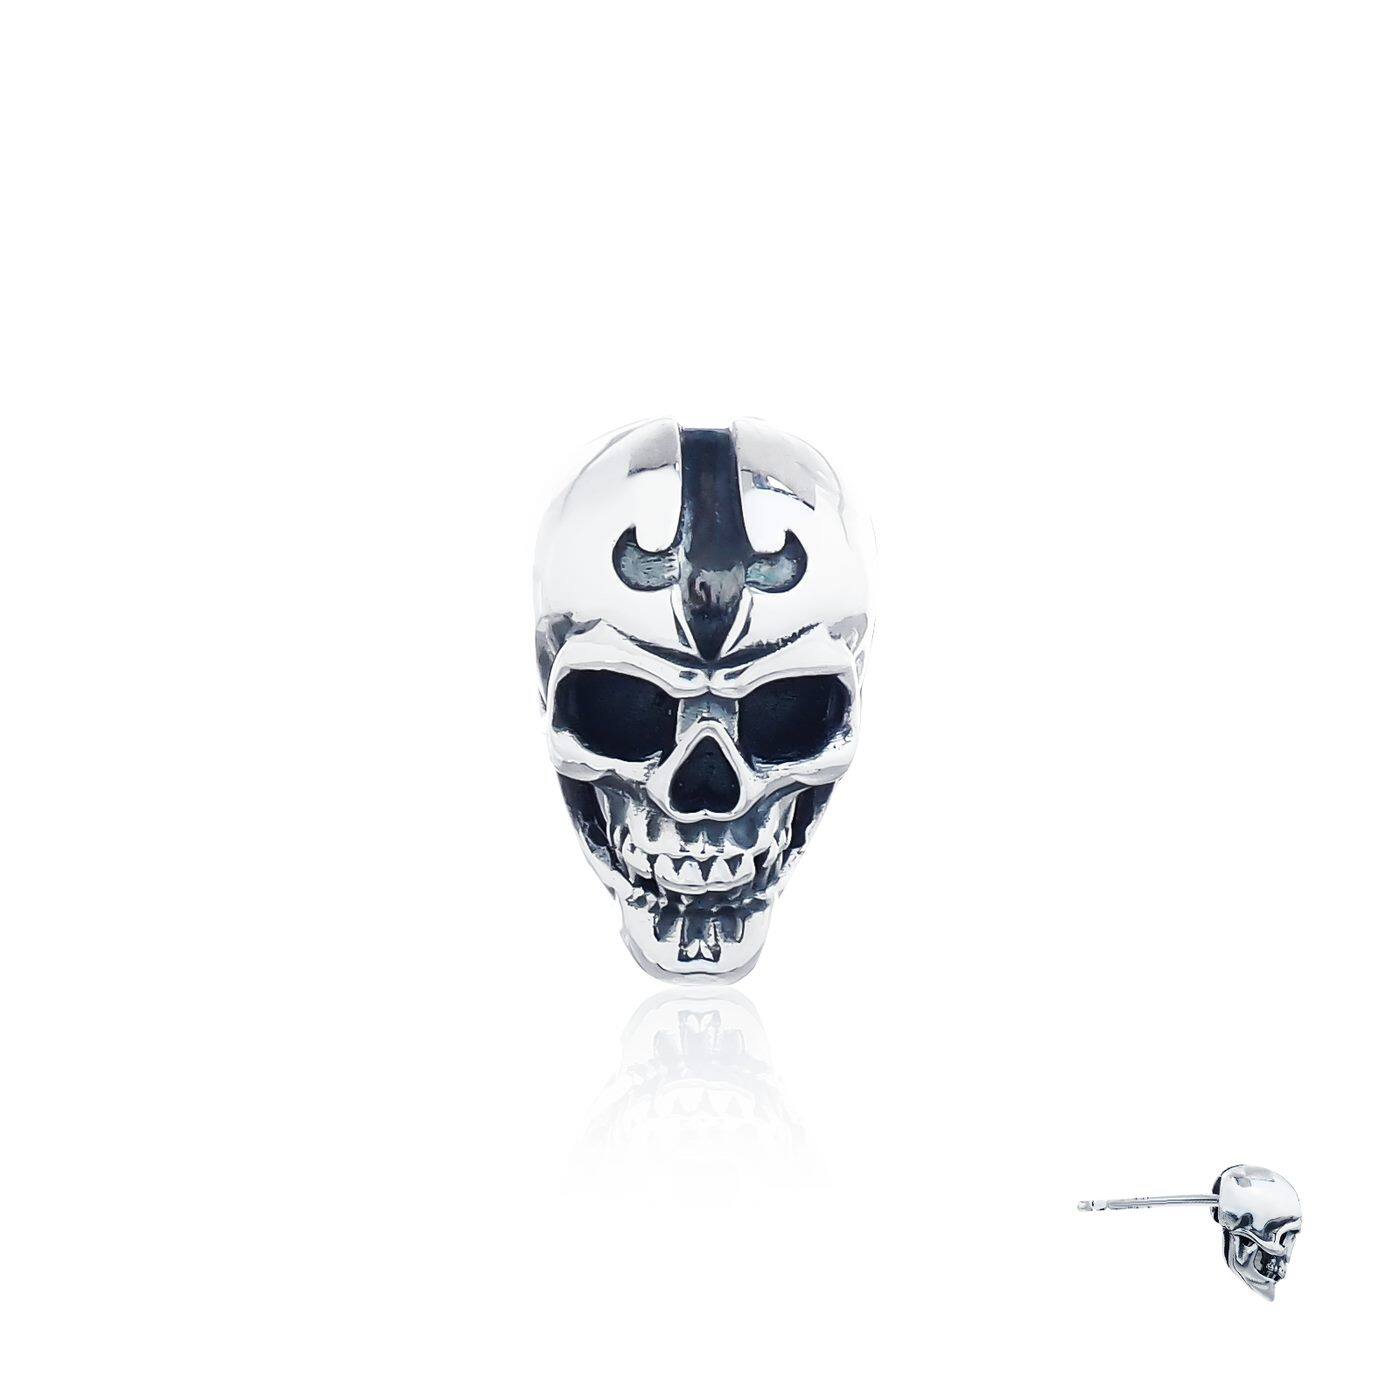 The Ultimate Skull - Rebirth - Earring Stud ต่างหูเงินแท้ 925 แบบปักก้าน แกะมือขัดเงา ลายกระโหลก fierce-de-lis **ขายเป็นชิ้น/ข้าง